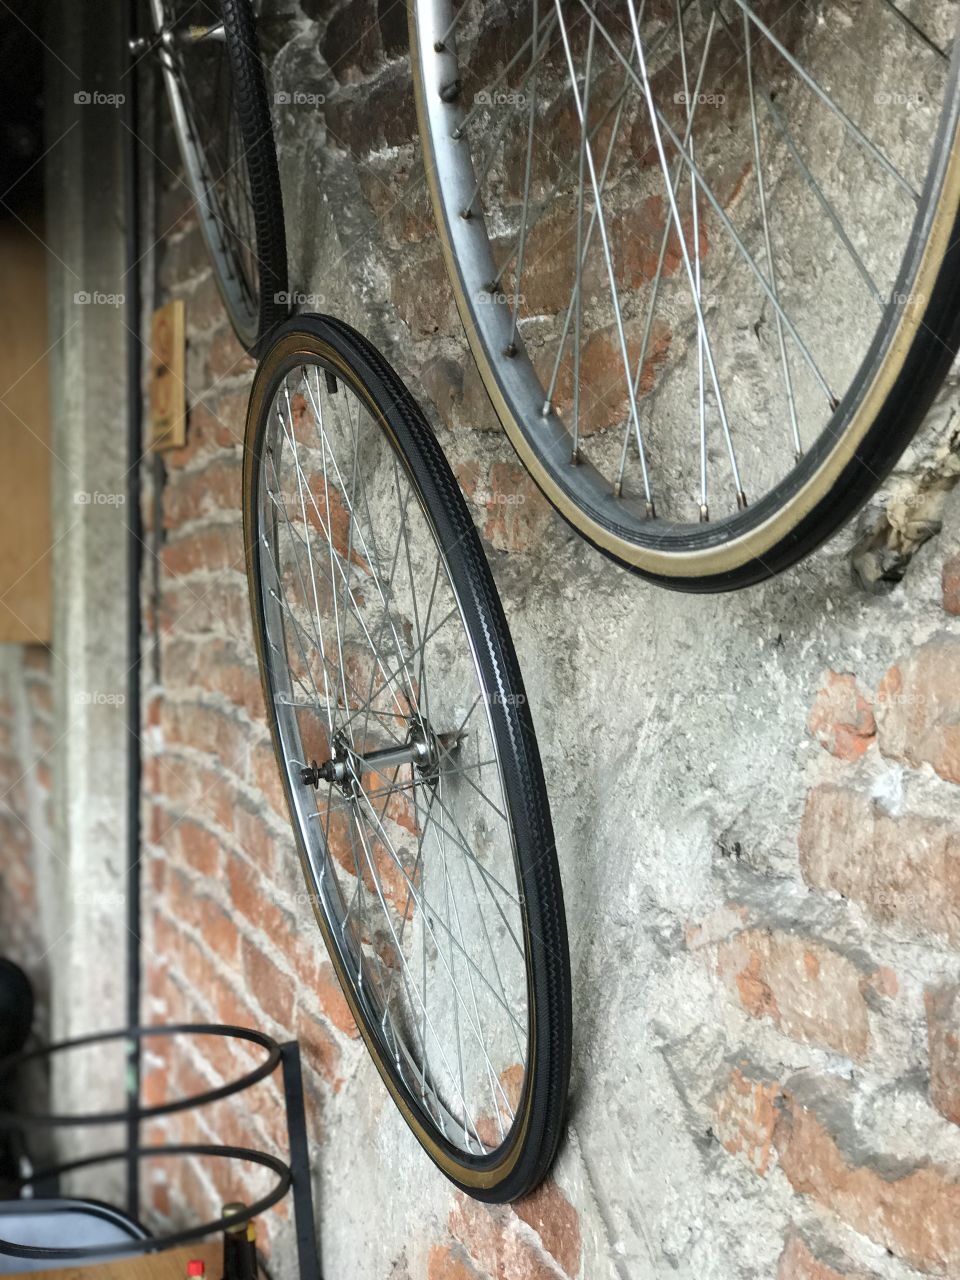 Bicycle wheels